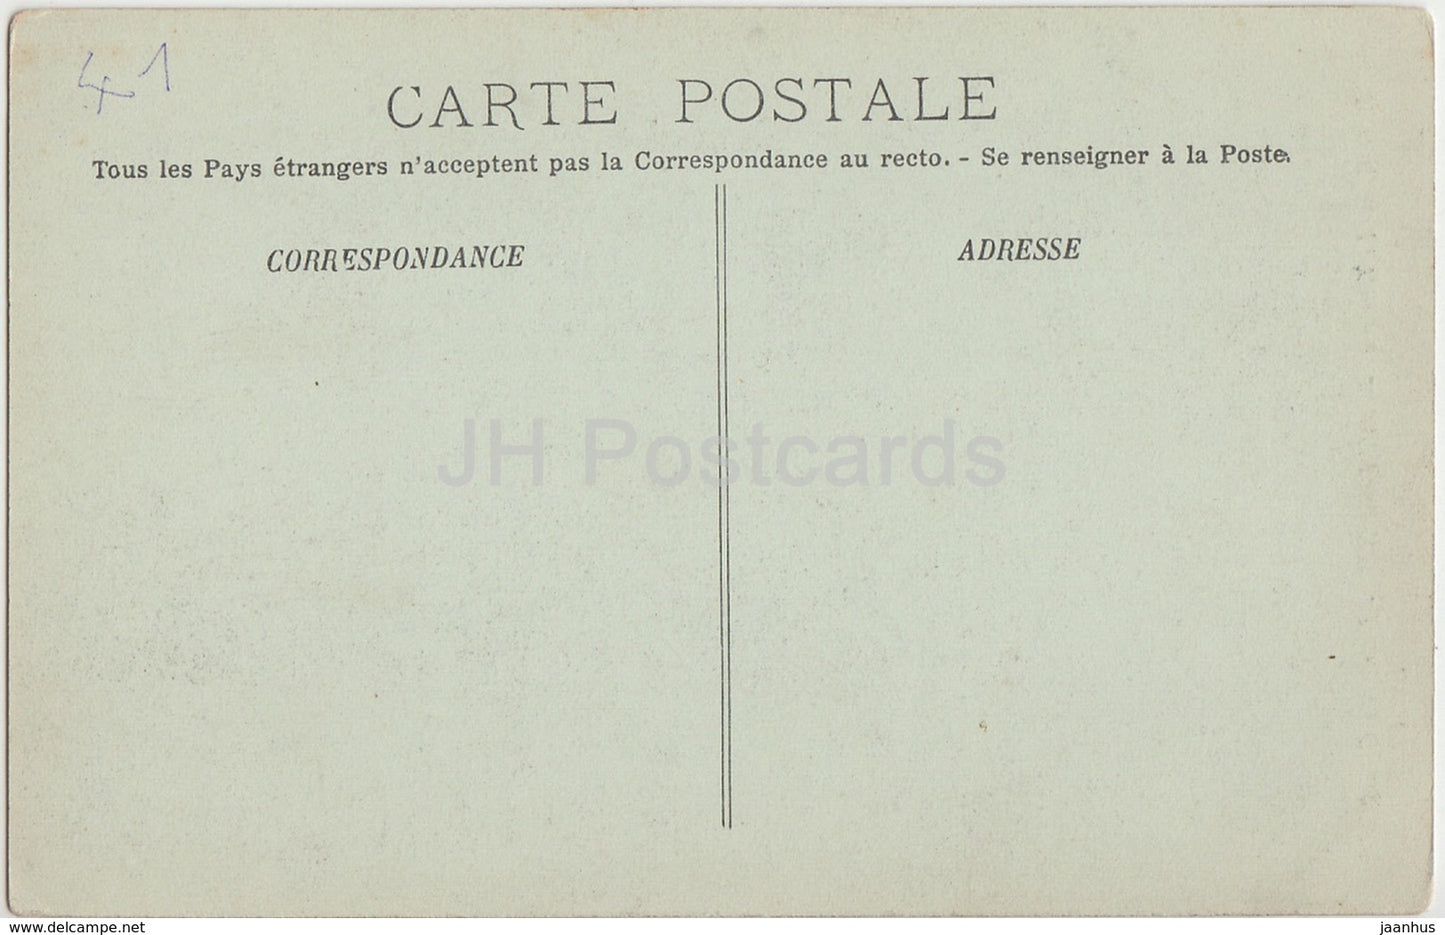 Blois - Le Chateau - Aile Louis XII - Entree du Grand Escalier - Schloss - 52 - alte Postkarte - Frankreich - unbenutzt